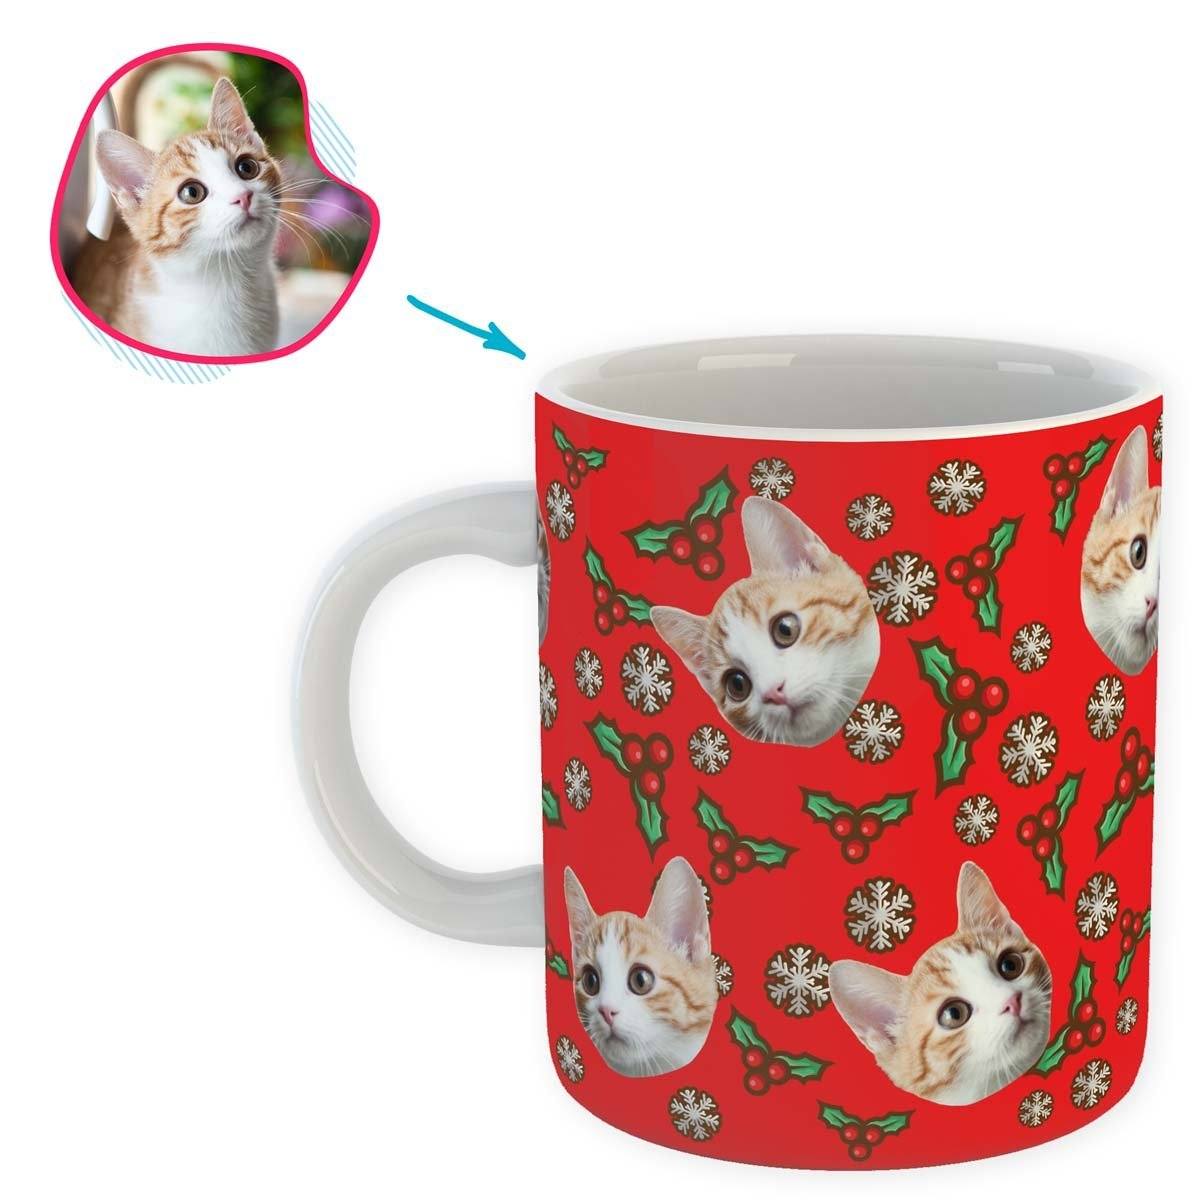 Mistletoe Personalized Mug